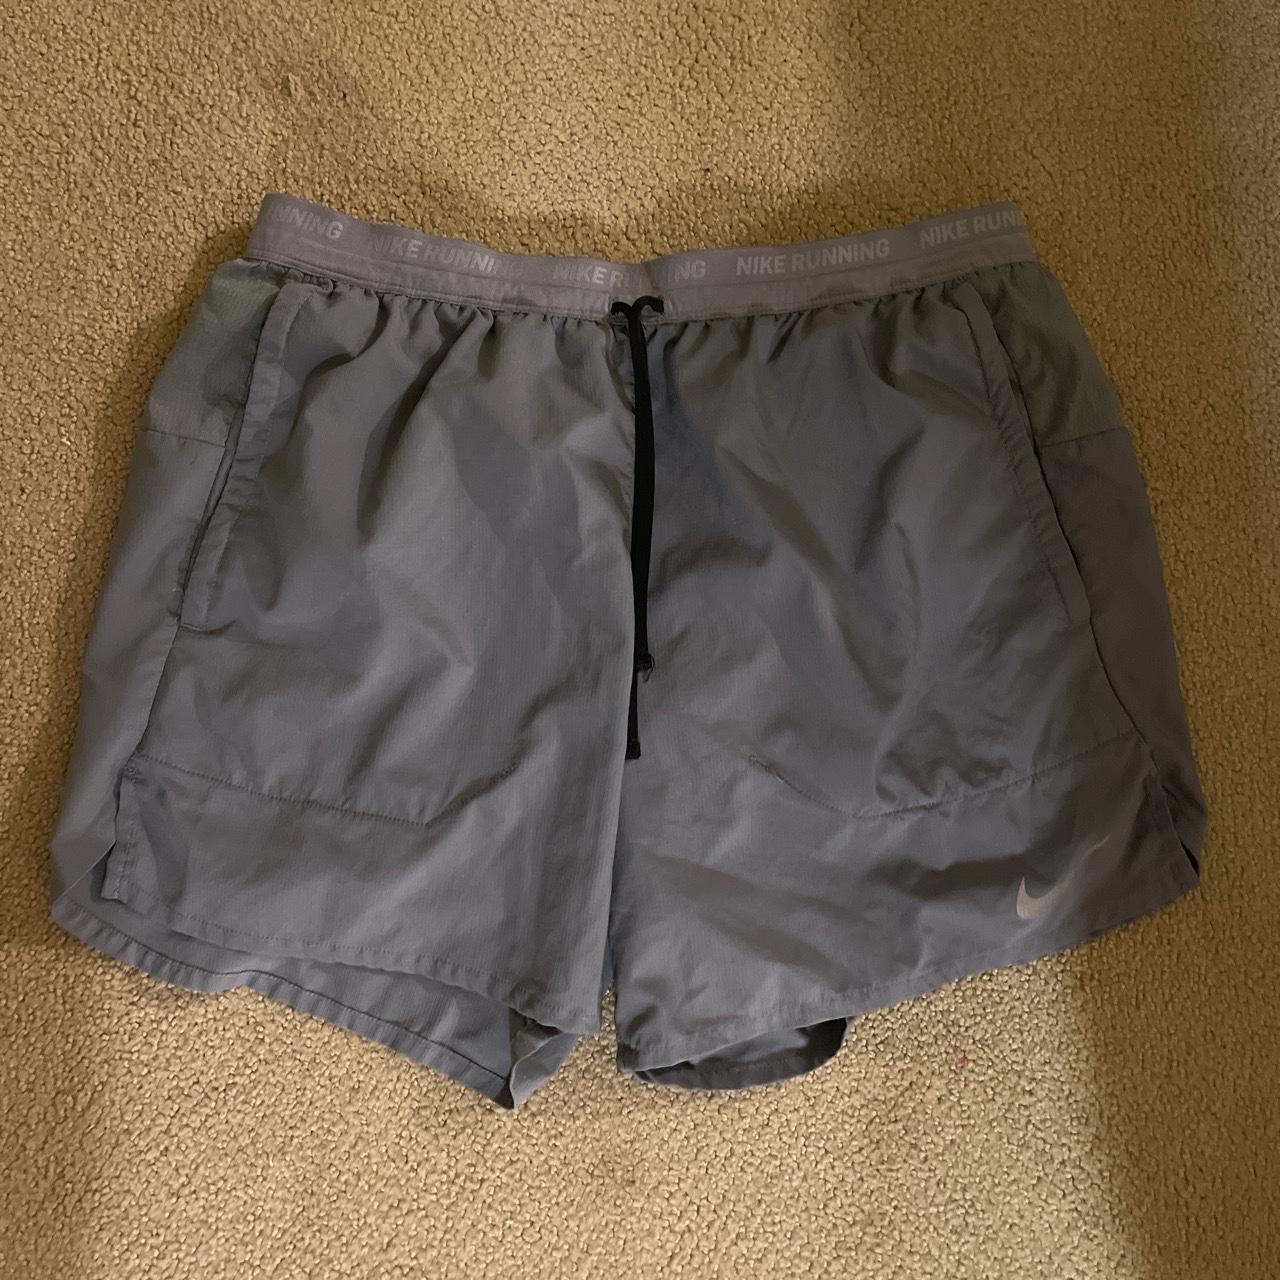 Grey nike shorts 5 inch inseam size medium - Depop